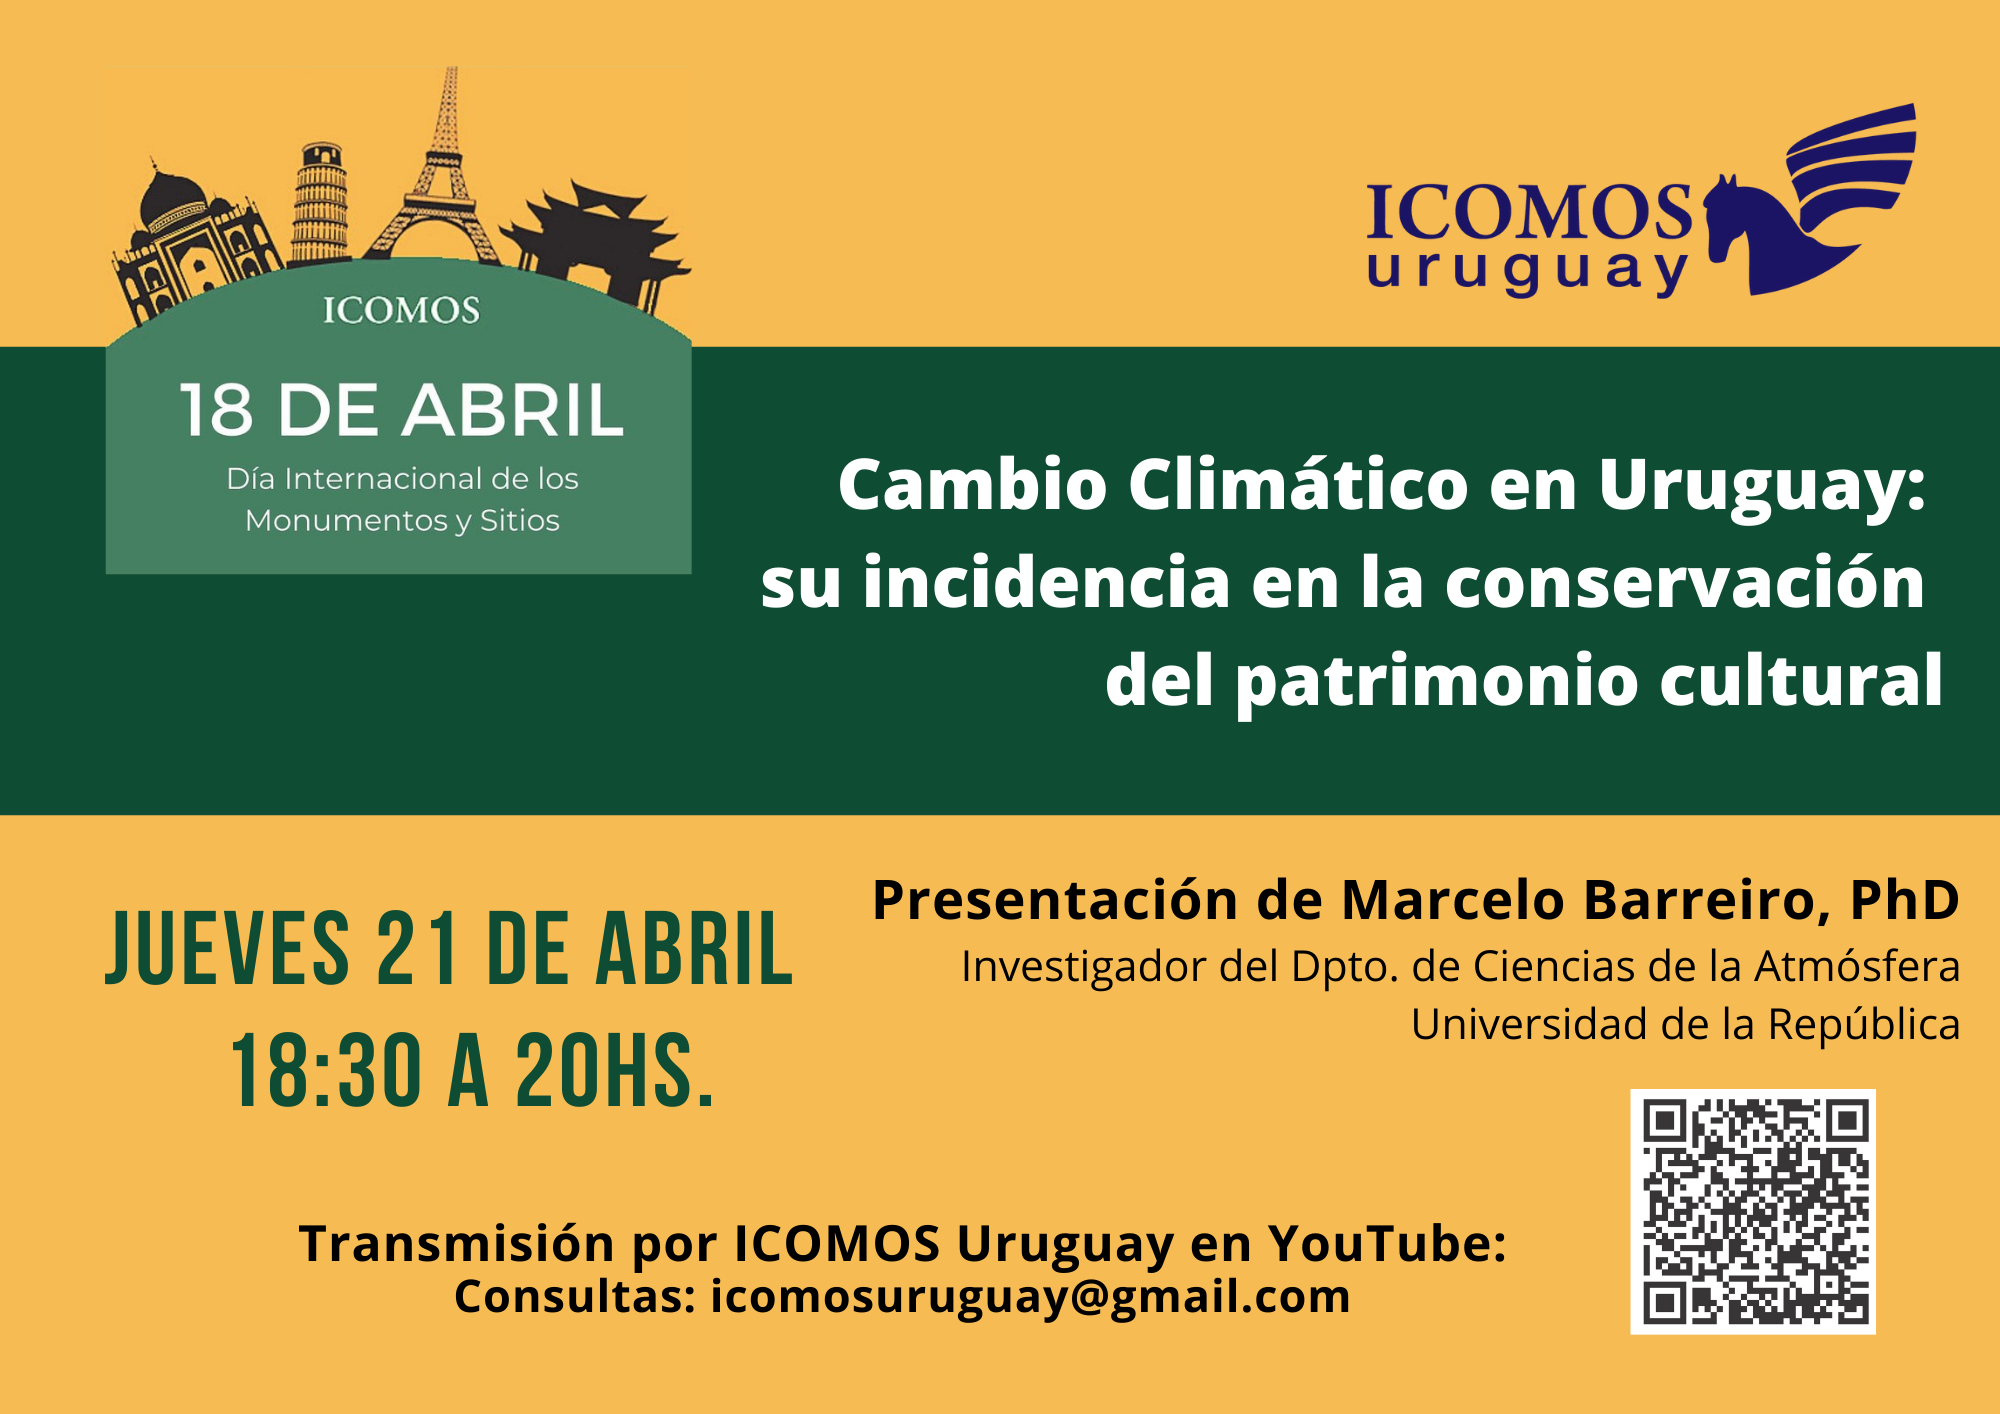 ICOMOS Uy Cambio Climático 21.4.2022